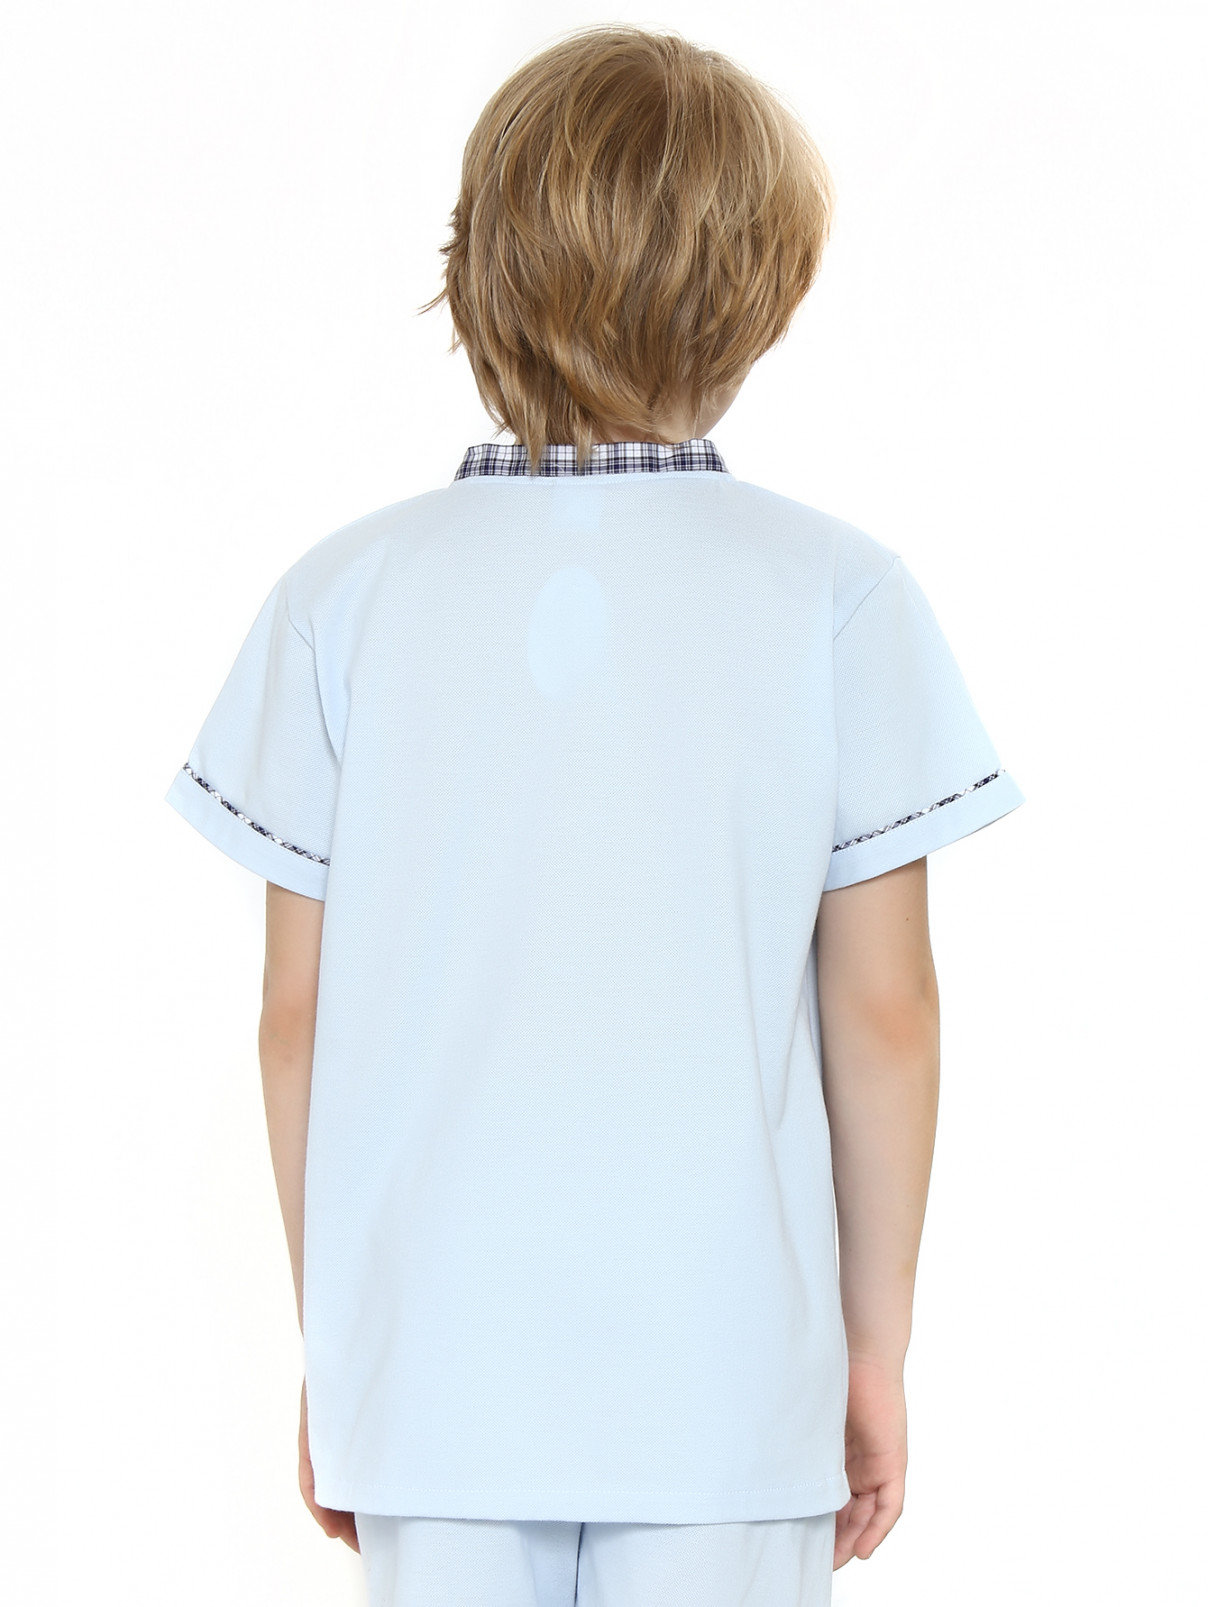 Пижама из хлопка с контрастной отделкой и аппликацией Giottino  –  Модель Верх-Низ1  – Цвет:  Синий